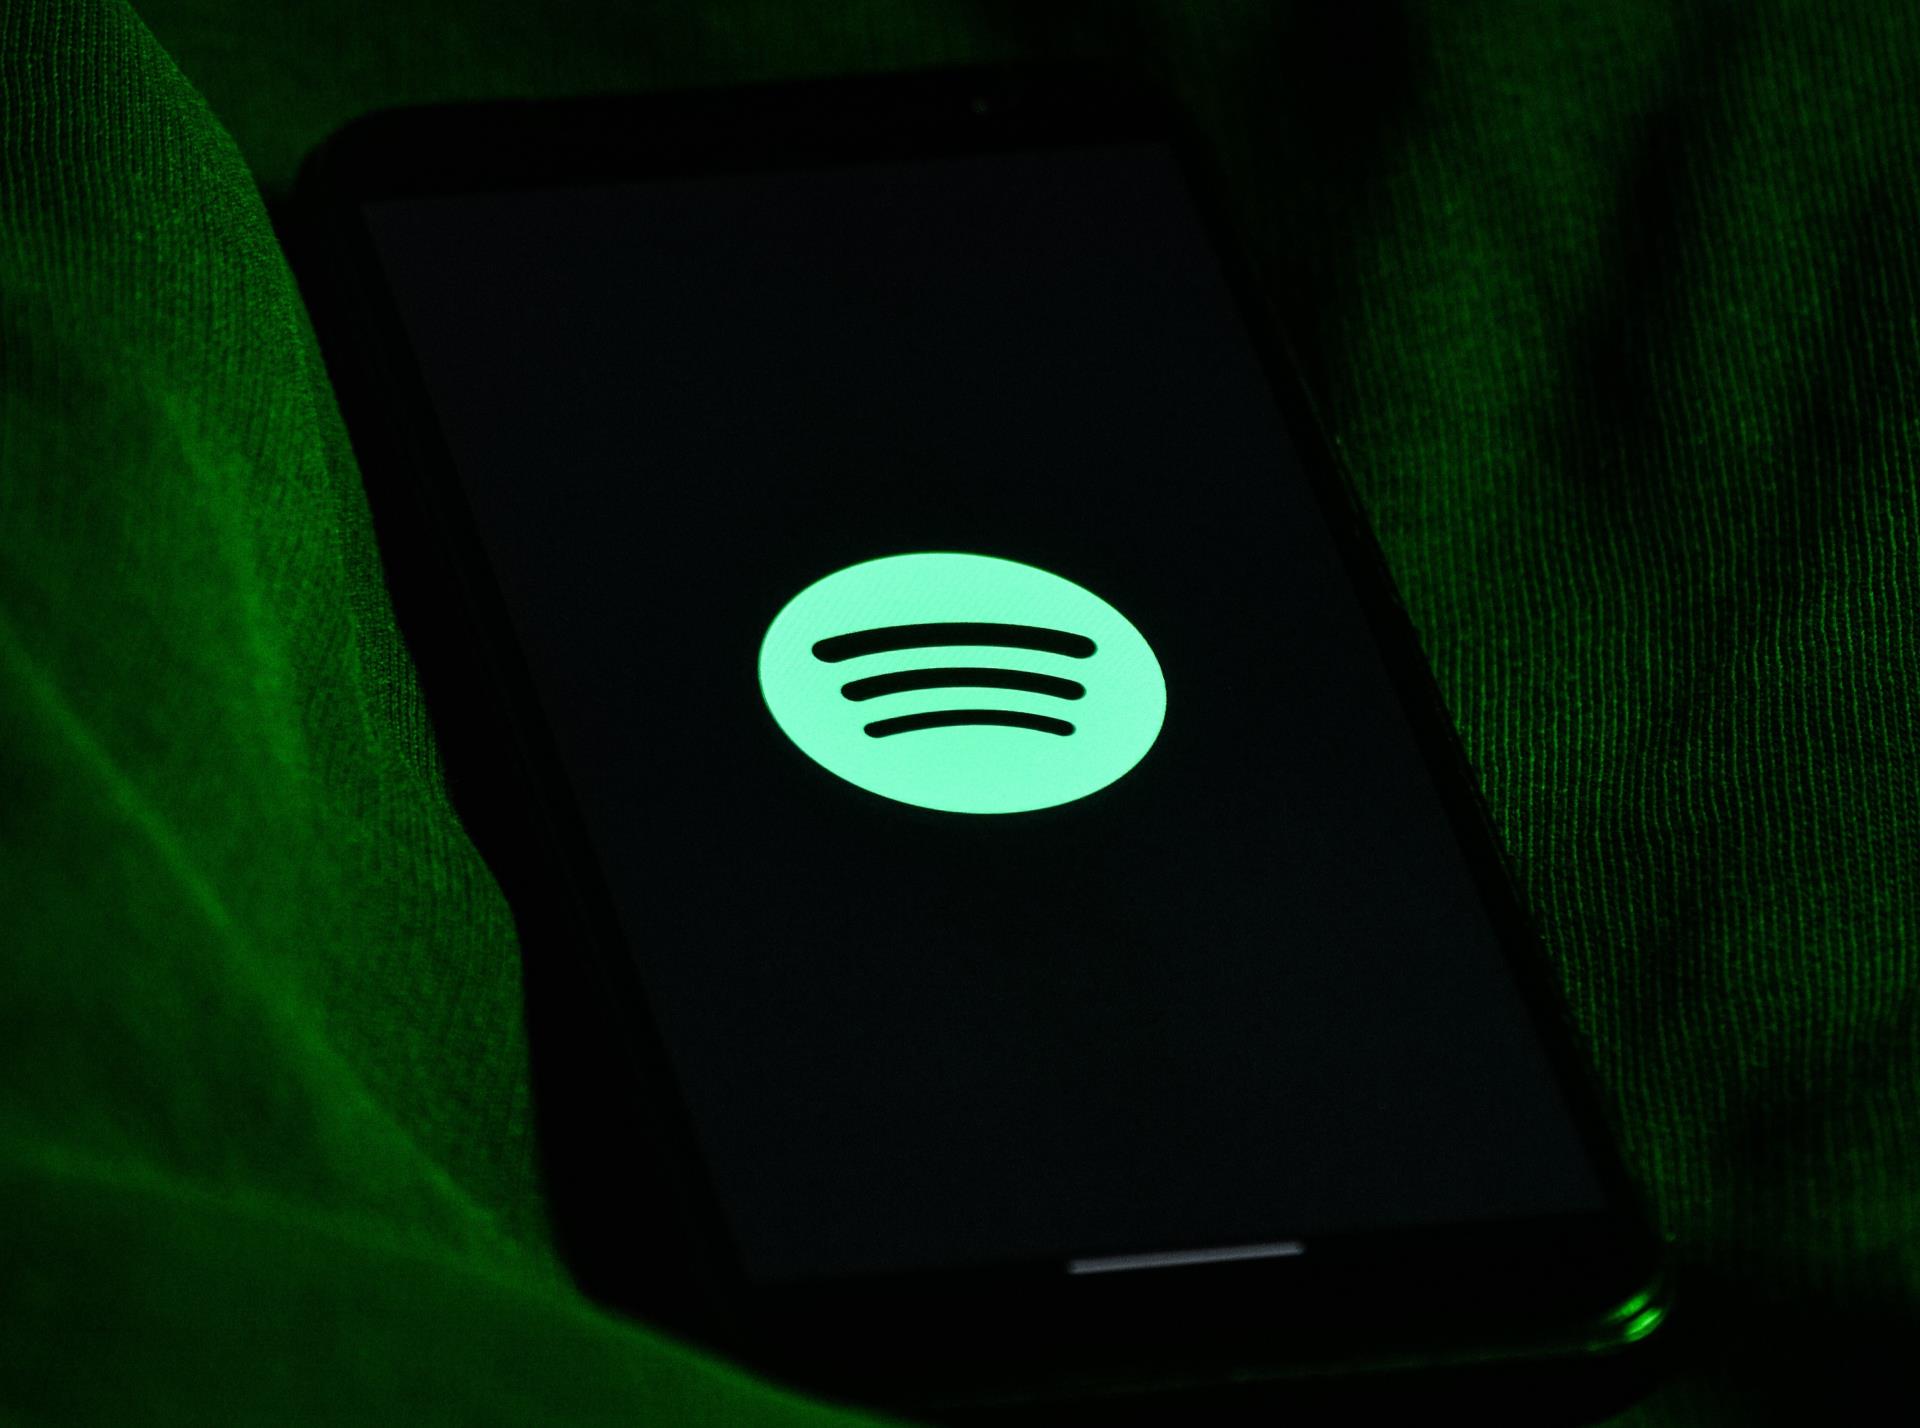 Spotify expande o Spotify Audience Network para o Brasil  Revista LIDE -  Reportagens, notícias, artigos, vídeos e podcasts